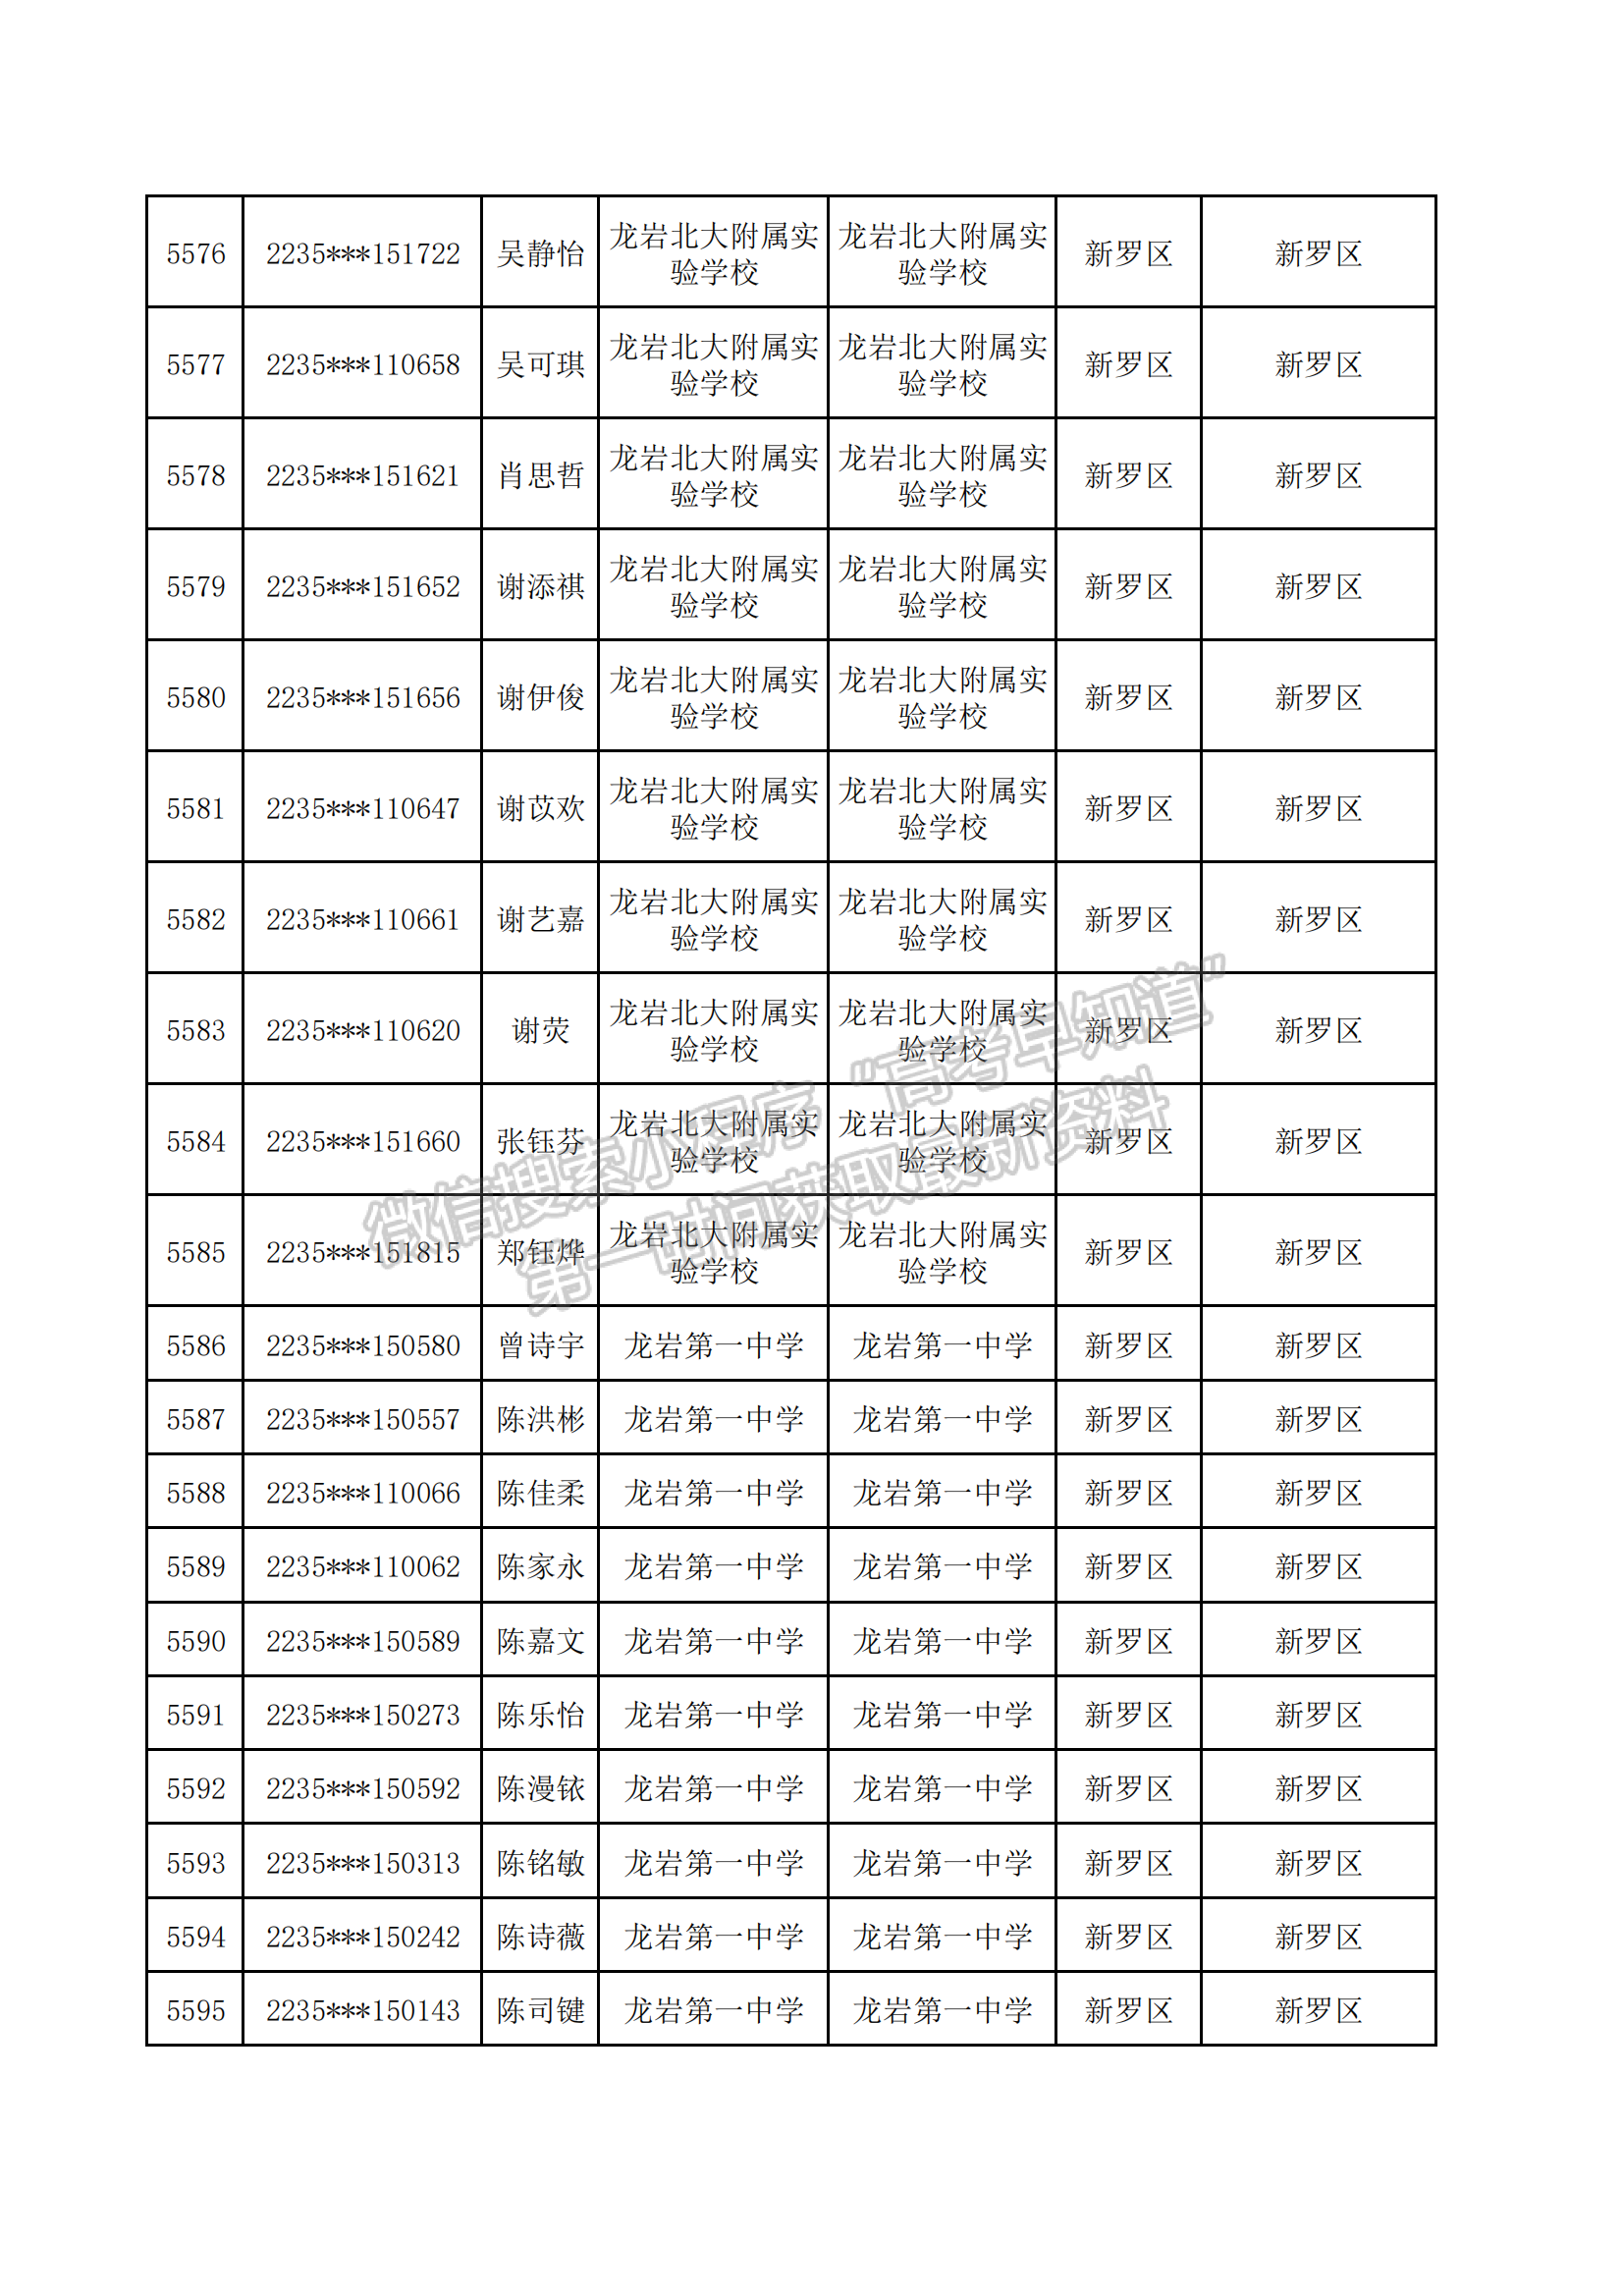 2022年福建省高校专项计划资格考生名单公示